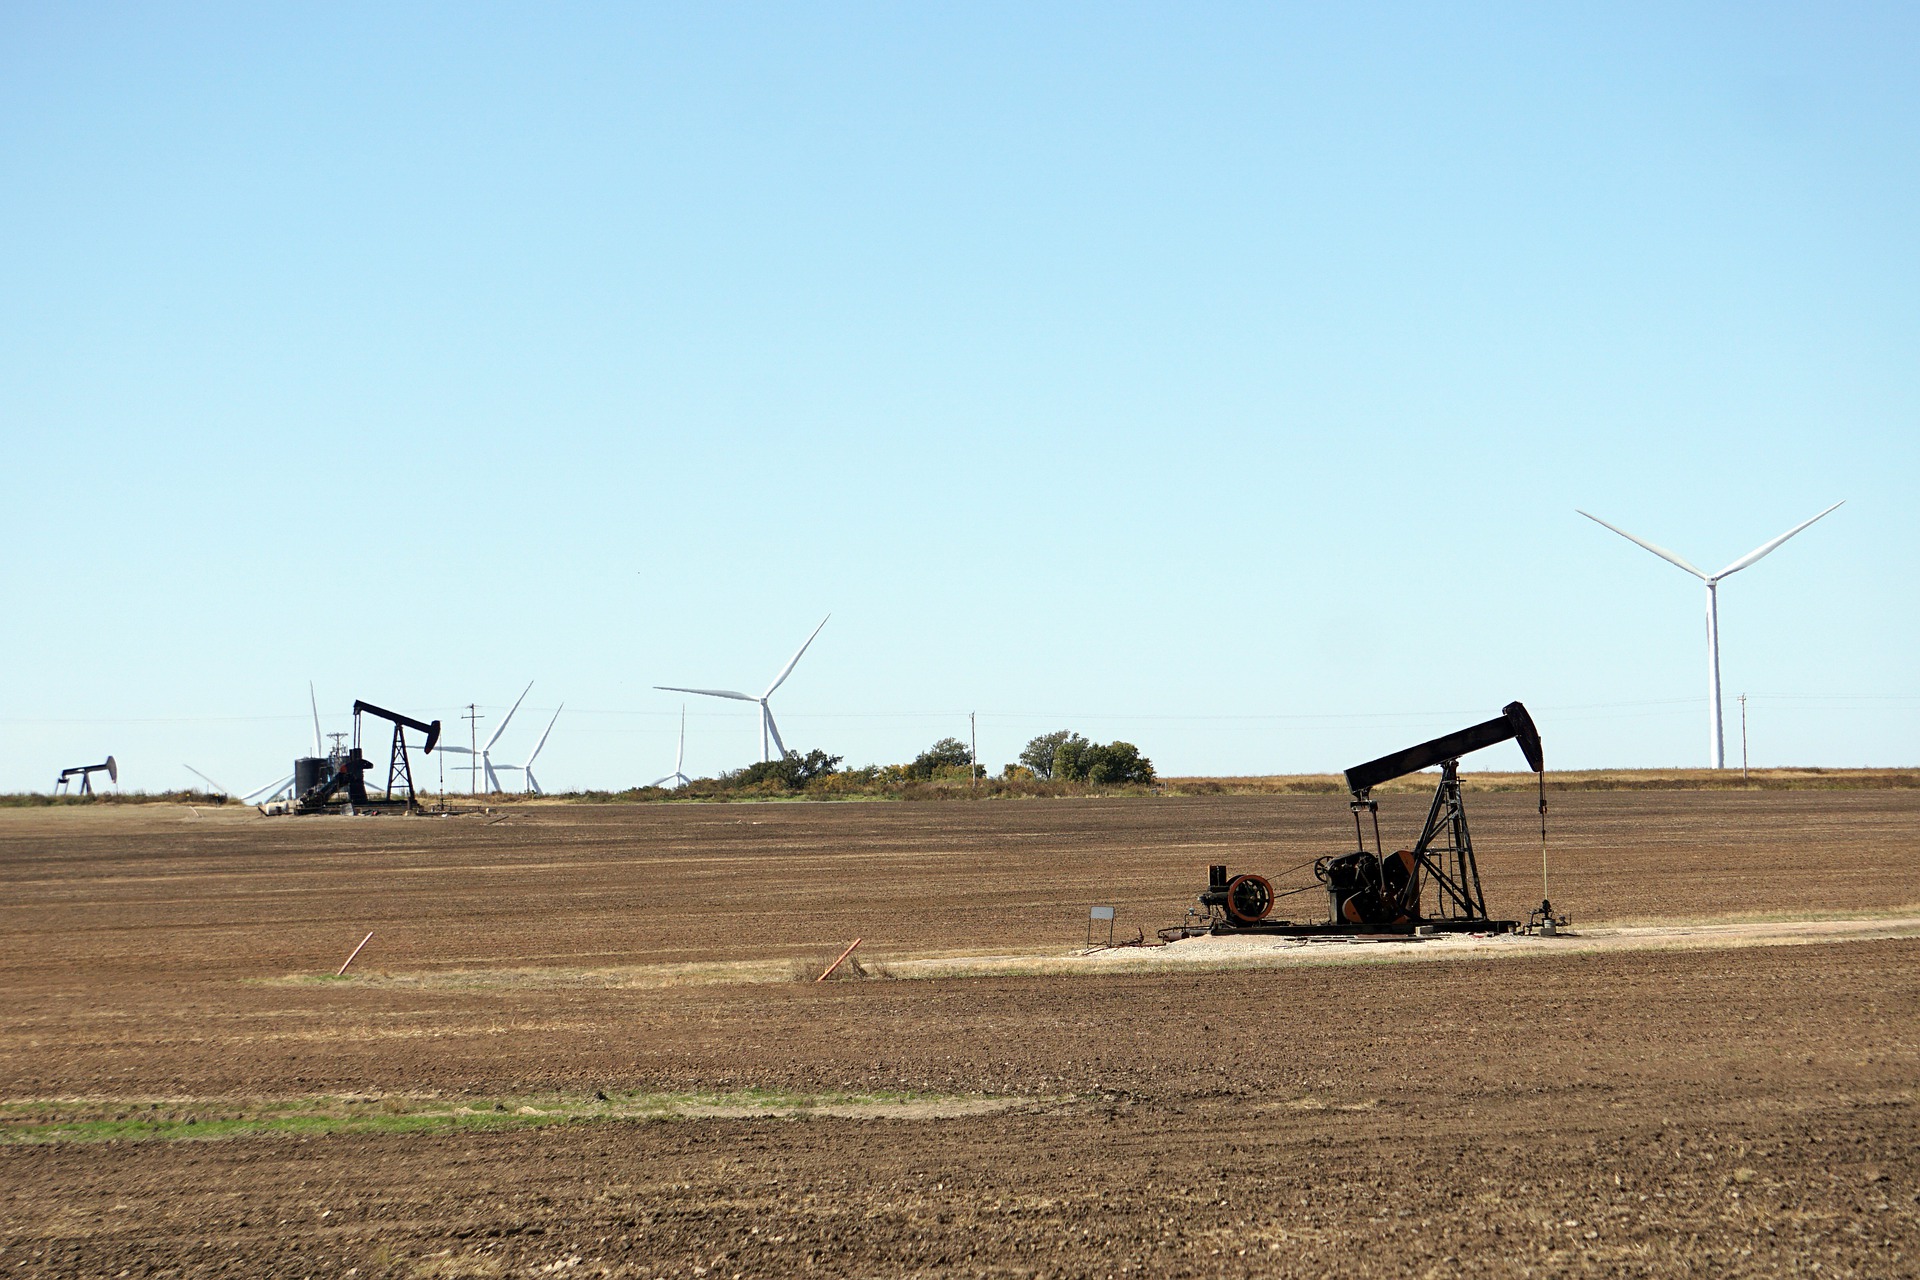 Participação de renováveis cresce e interrompe cerca de 4% na geração fóssil global. Na imagem, poços de petróleo e turbinas eólicas (Foto: Mike/Pixabay)